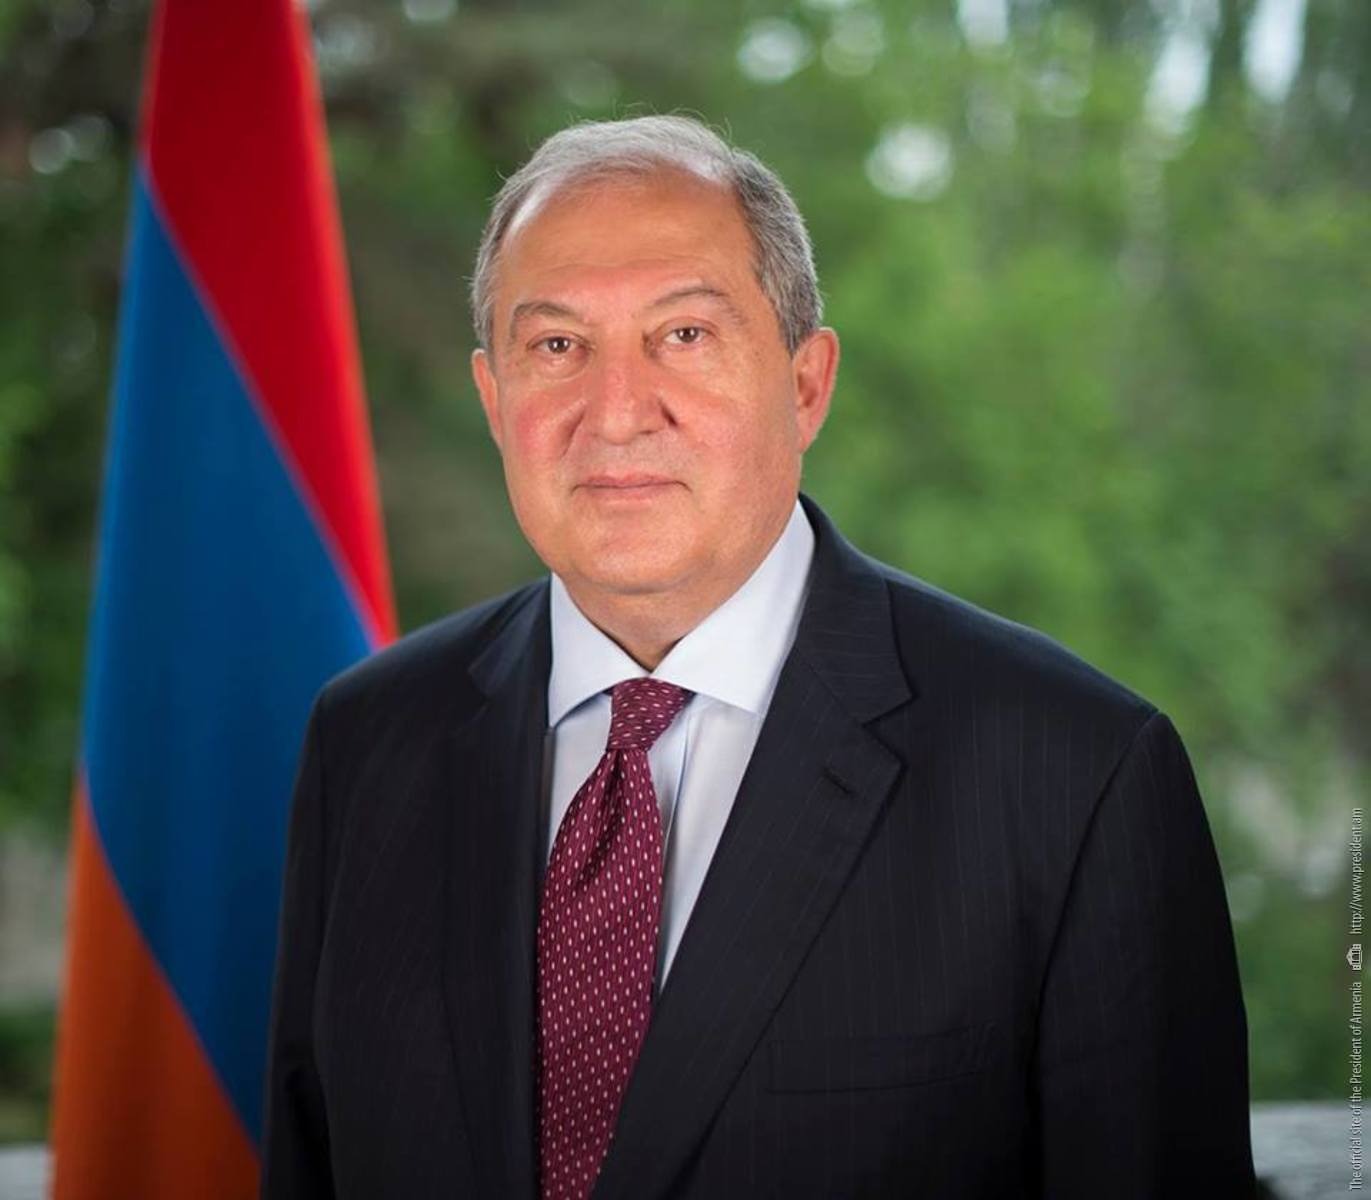 Мы в долгу перед нашими павшими героями: послание президента Армении по случаю Дня Армии